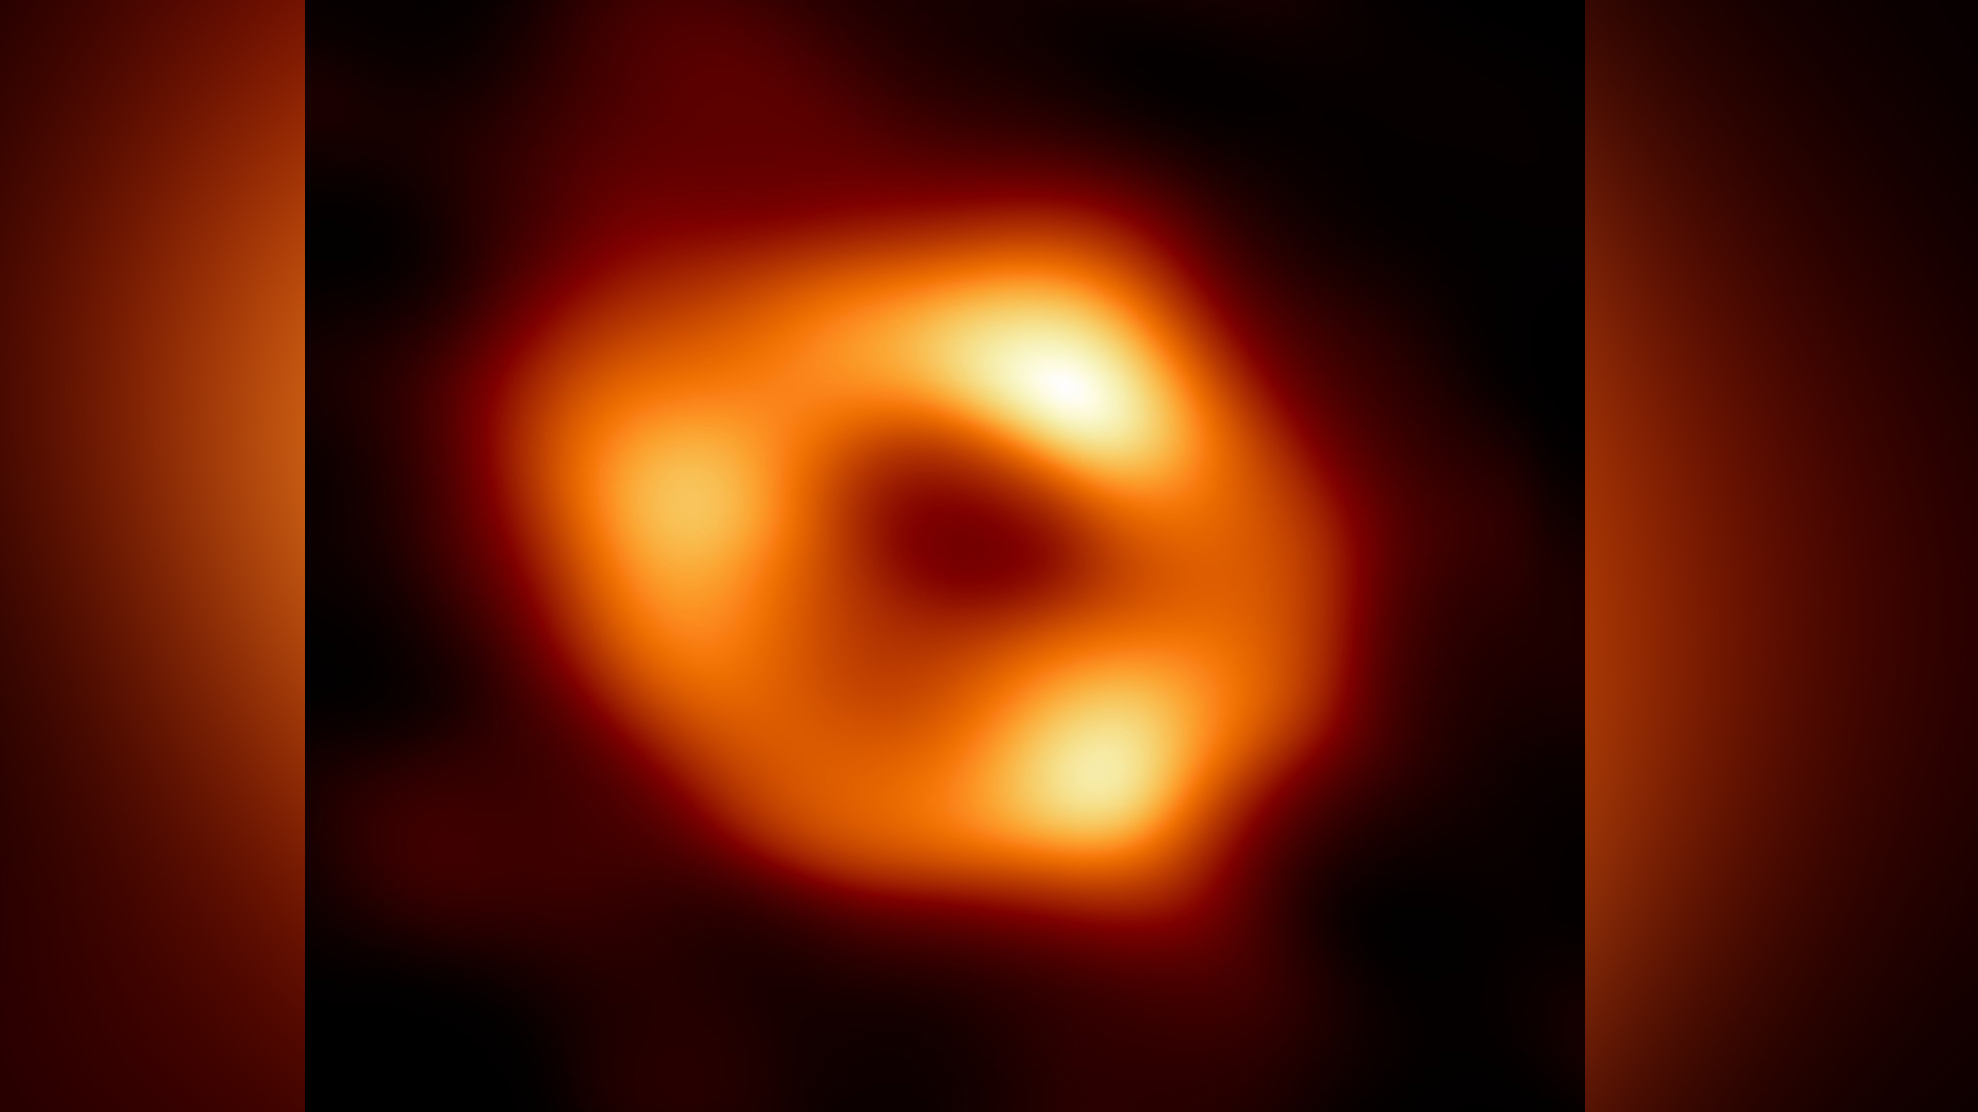 Объект Стрелец A* — сверхмассивная чёрная дыра в центре галактики Млечный Путь. Фото © Wikipedia